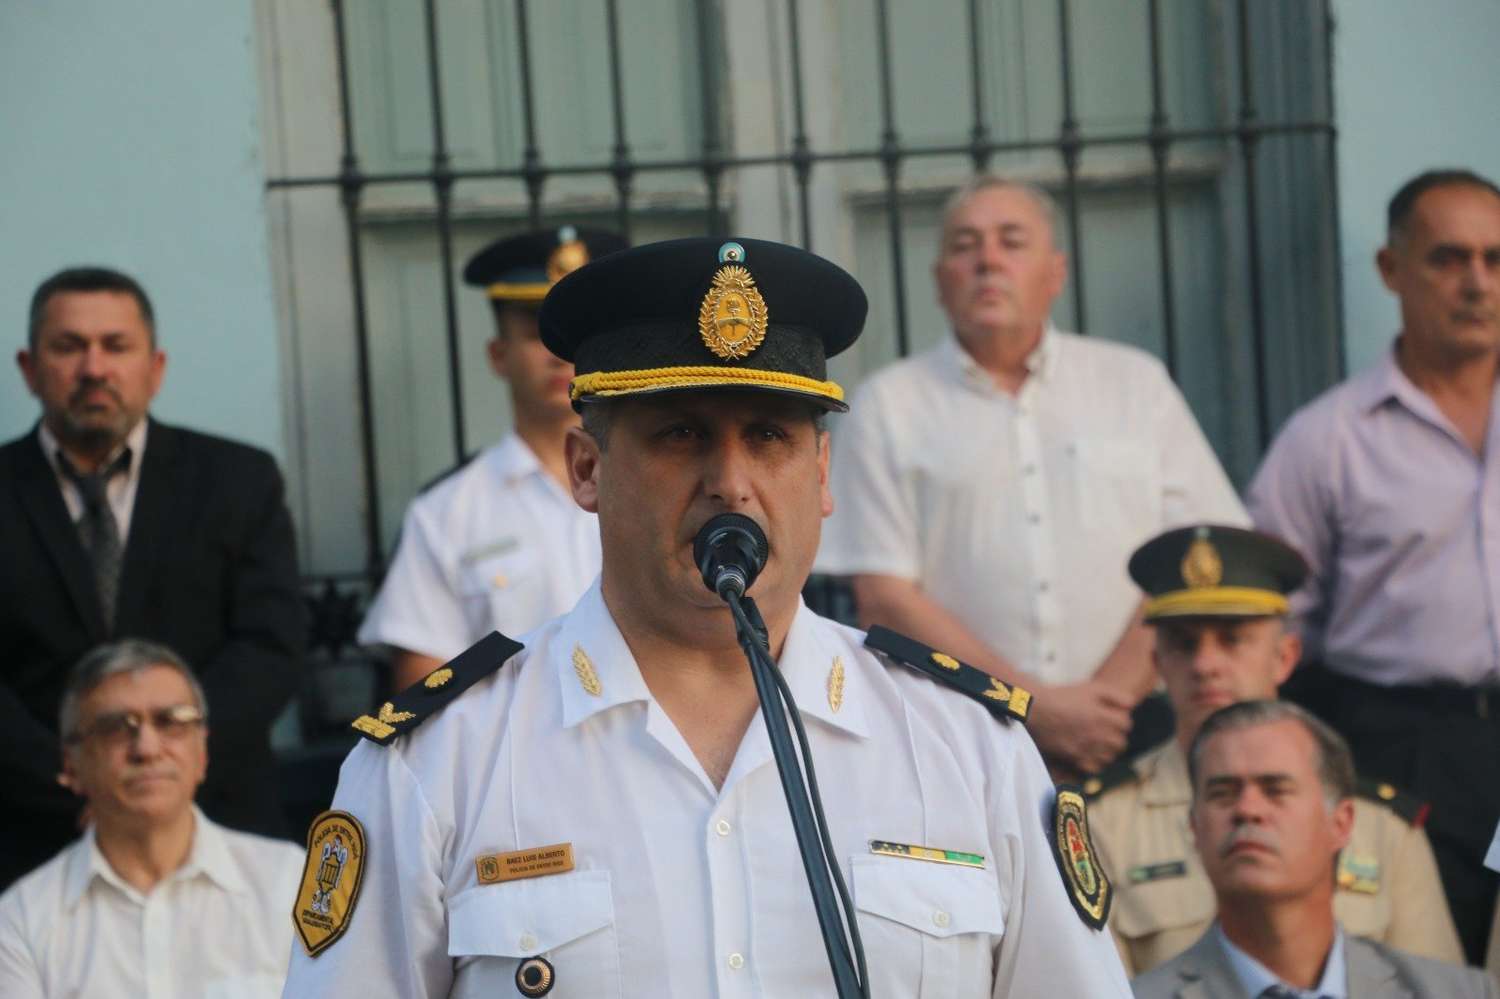 El comisario inspector Luis Báez asumirá al frente de la Departamental Gualeguaychú